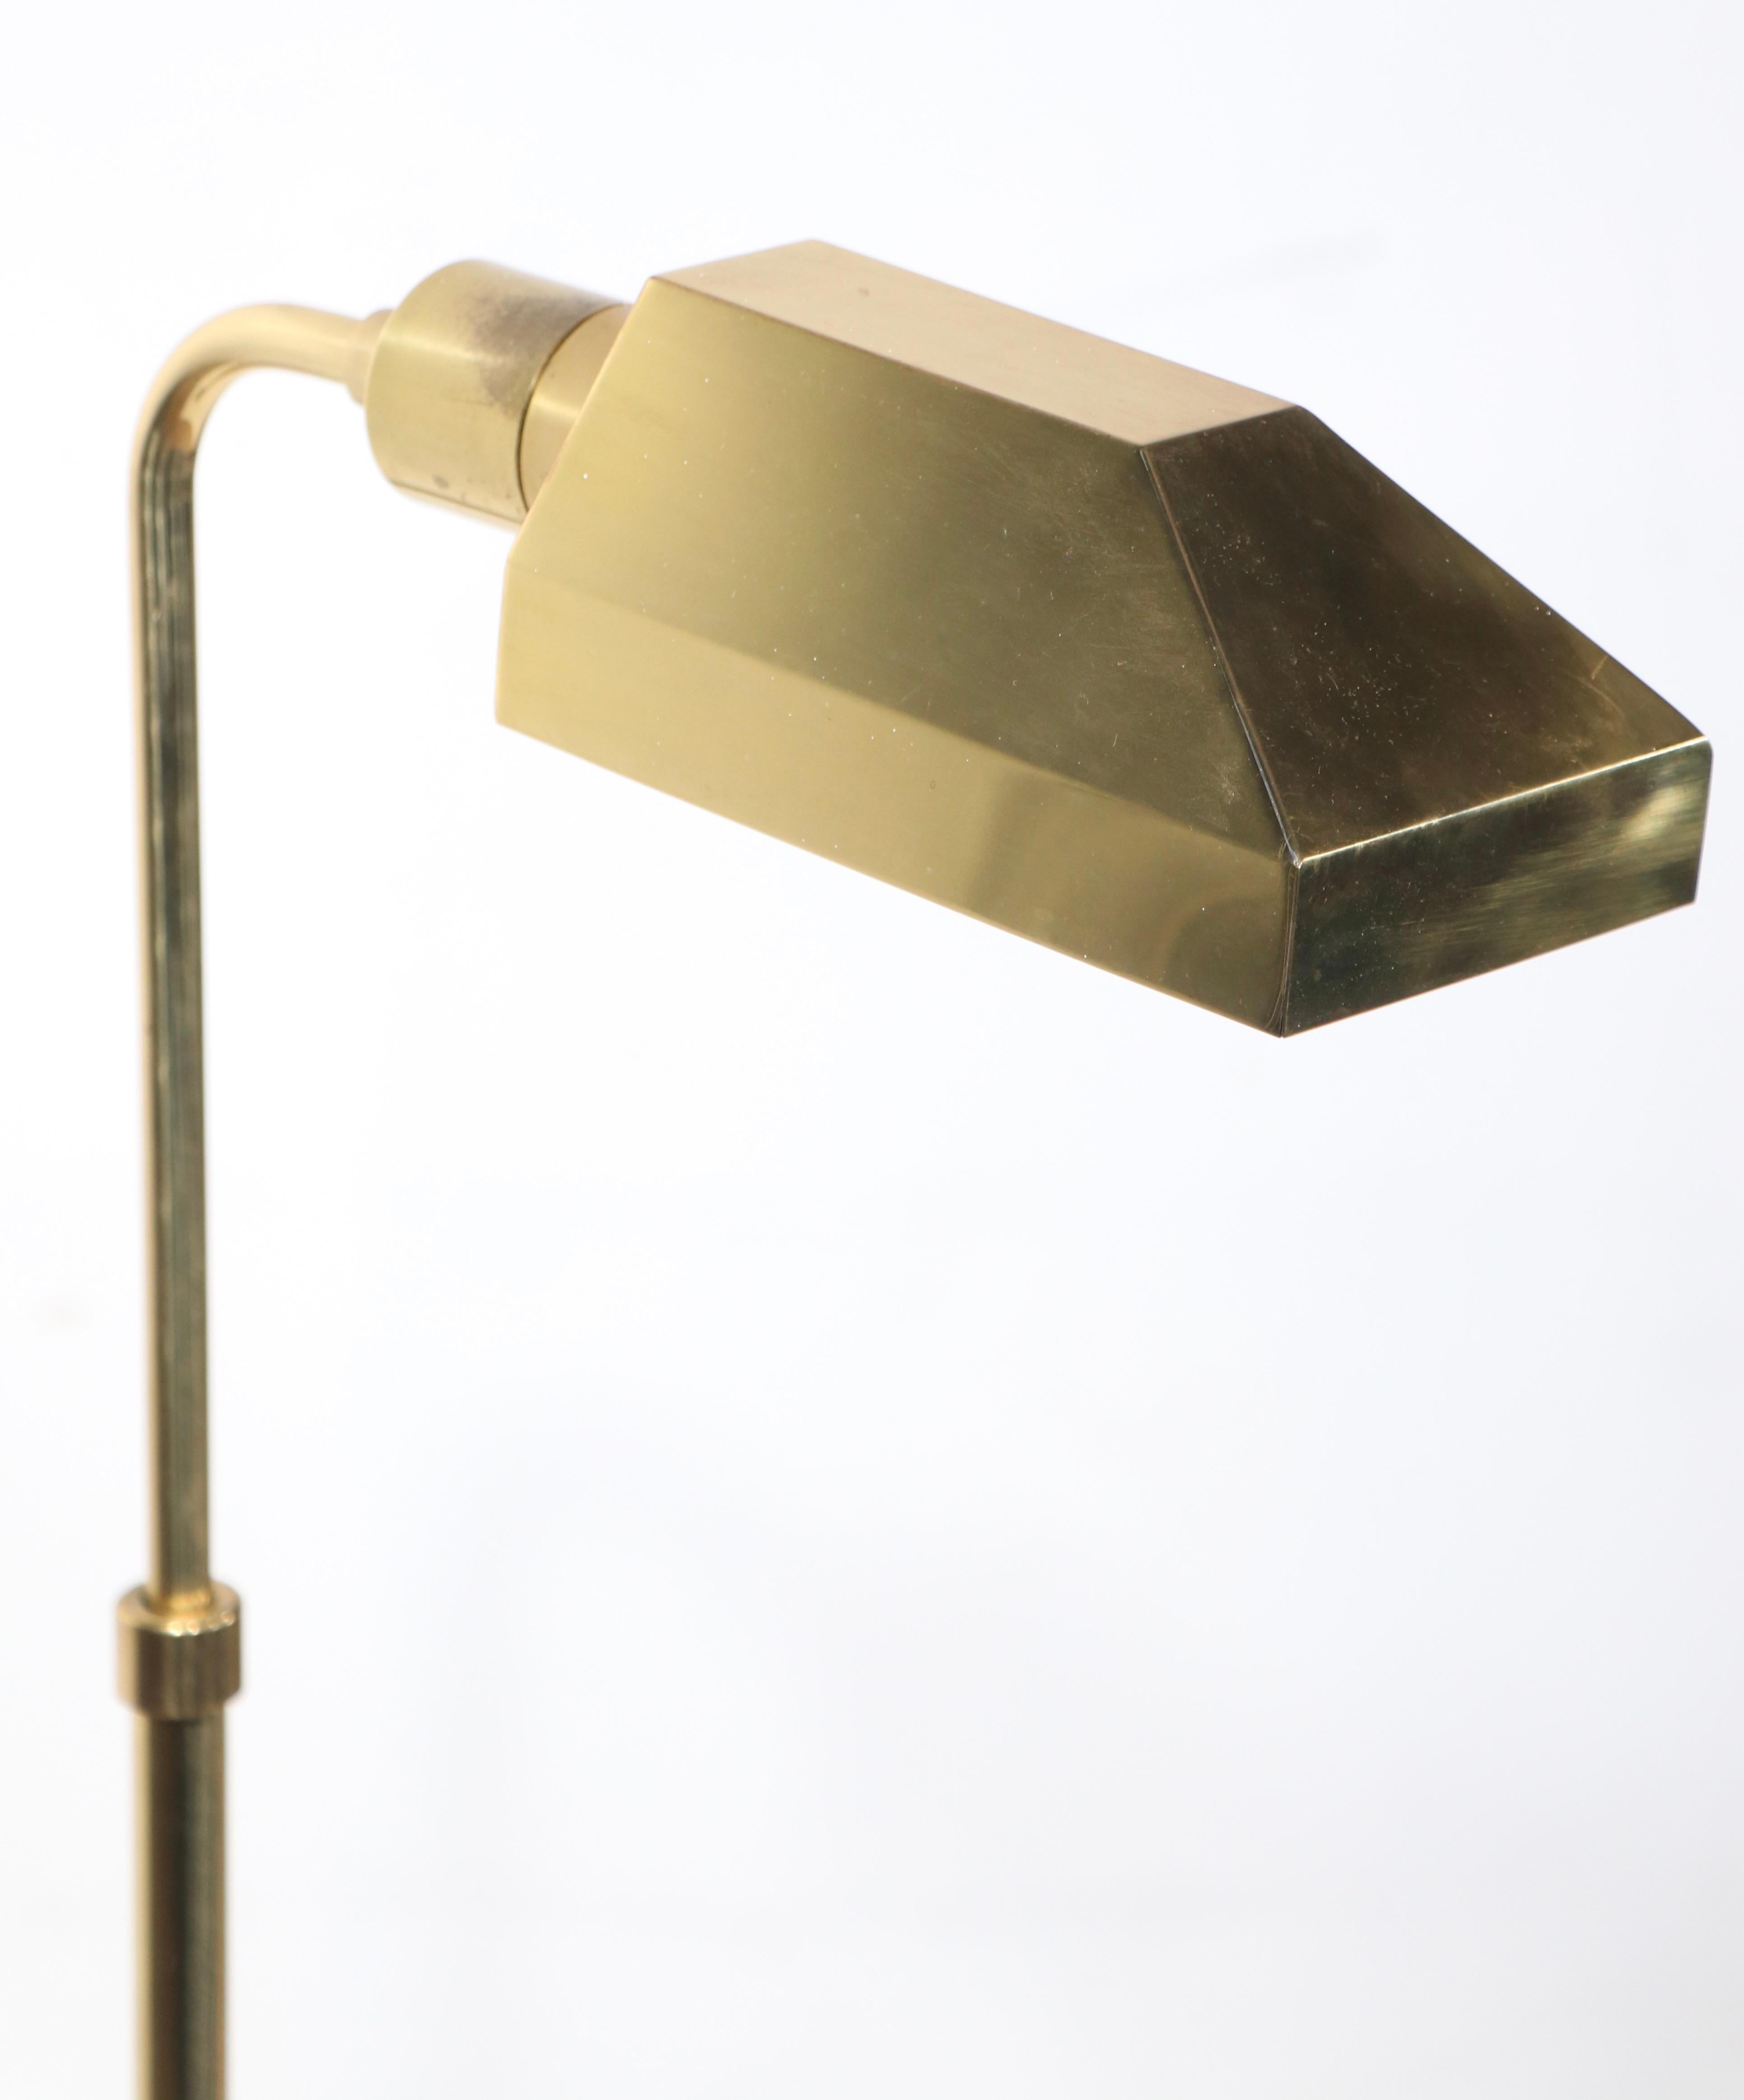 Réinterprétation classique post-moderne de la forme antique de la lampe de pharmacie, attribuée à Koch & Lowey vers les années 1970. La lampe est construite en laiton massif, avec un abat-jour angulaire qui pivote sur la douille, pour diriger la